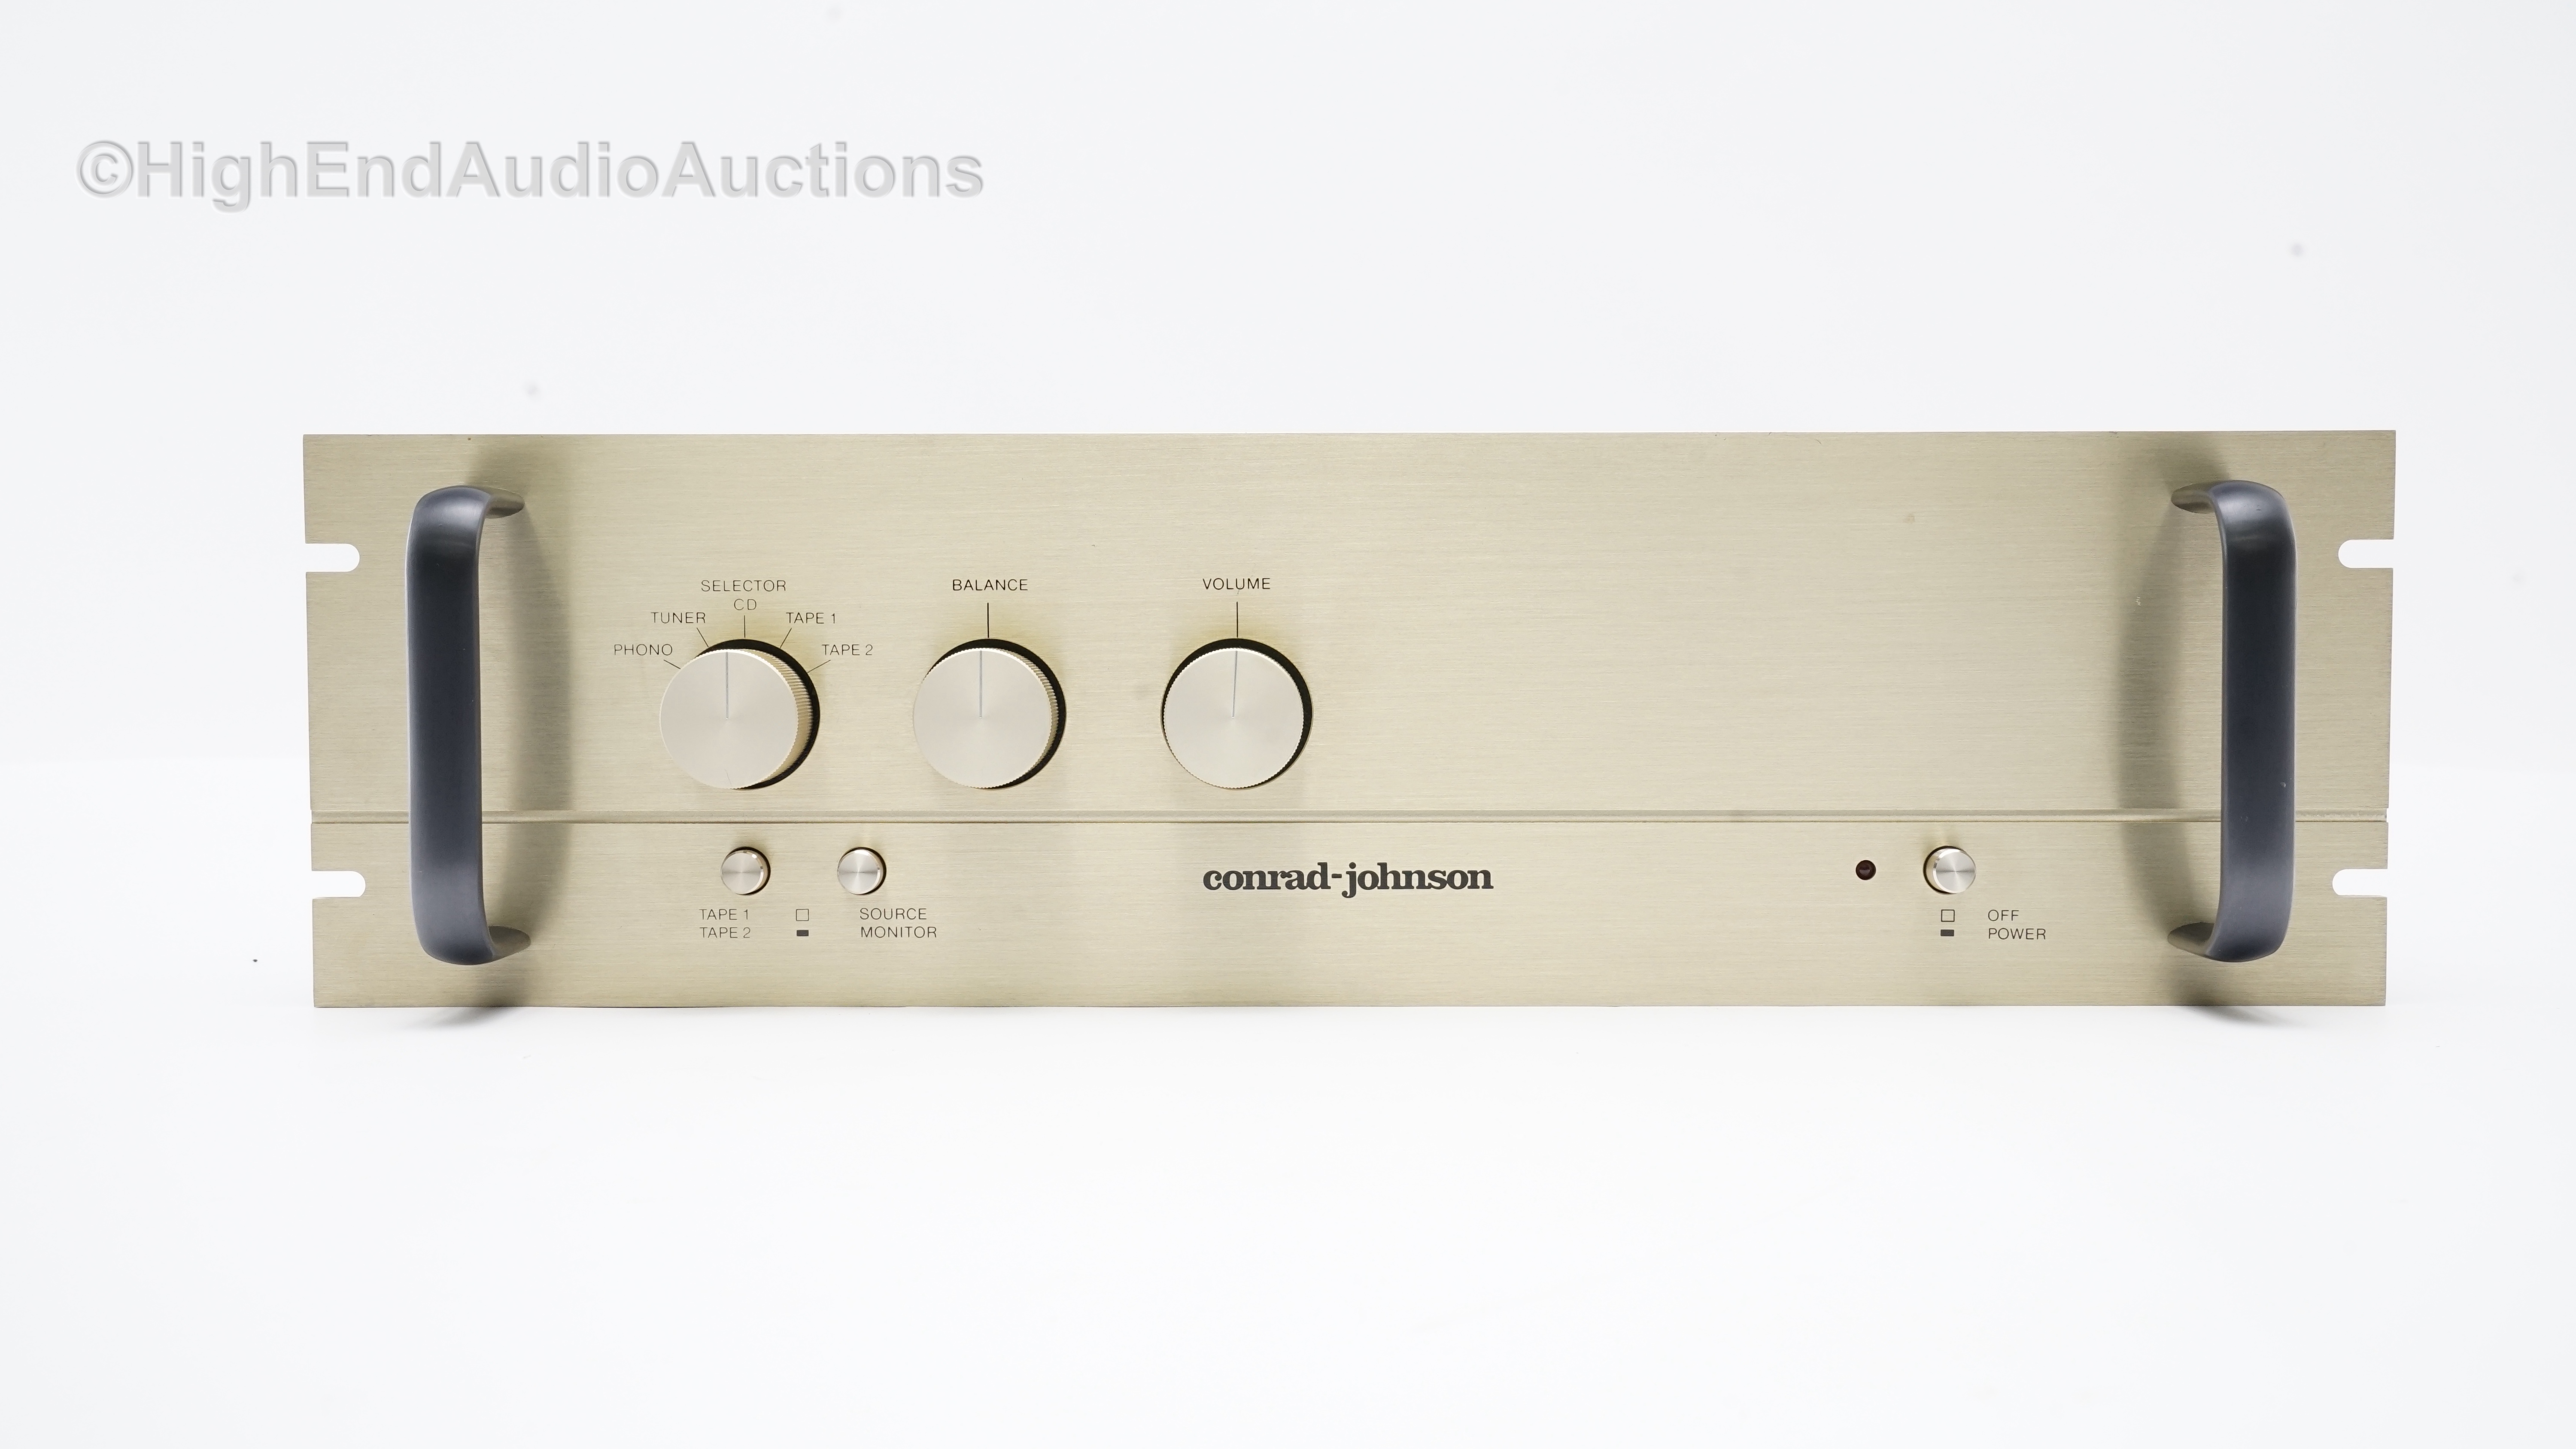 Conrad-Johnson PV-9 - High End Stereo Equipment We Buy